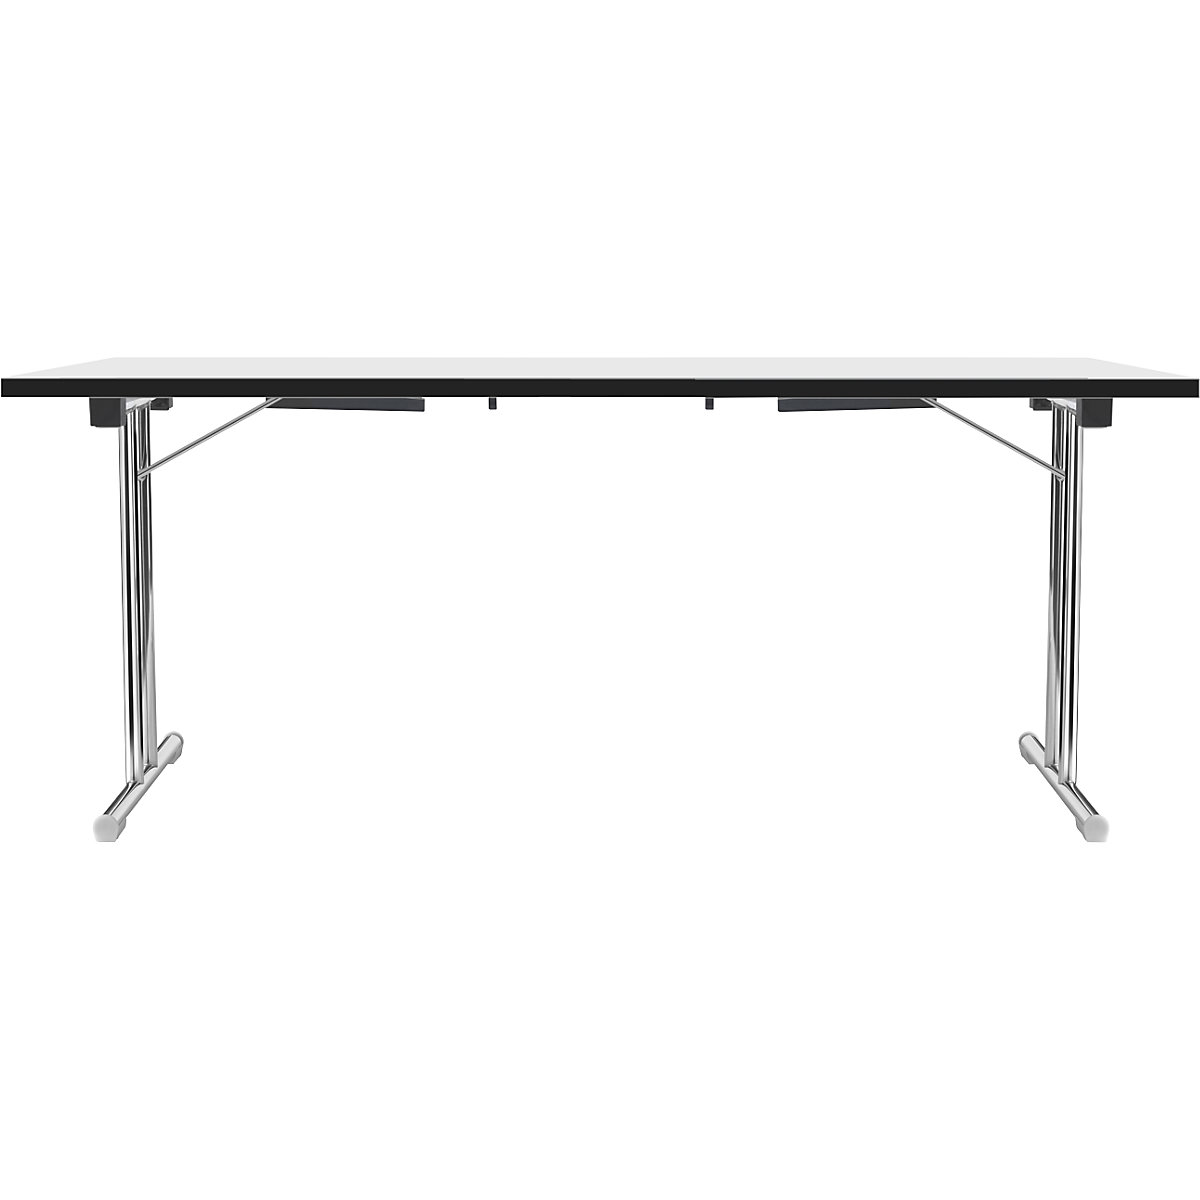 Zložljiva miza z dvojnim podnožjem v obliki črke T, ogrodje iz okrogle jeklene cevi, kromirano, bela/črna, ŠxG 1800 x 800 mm-6